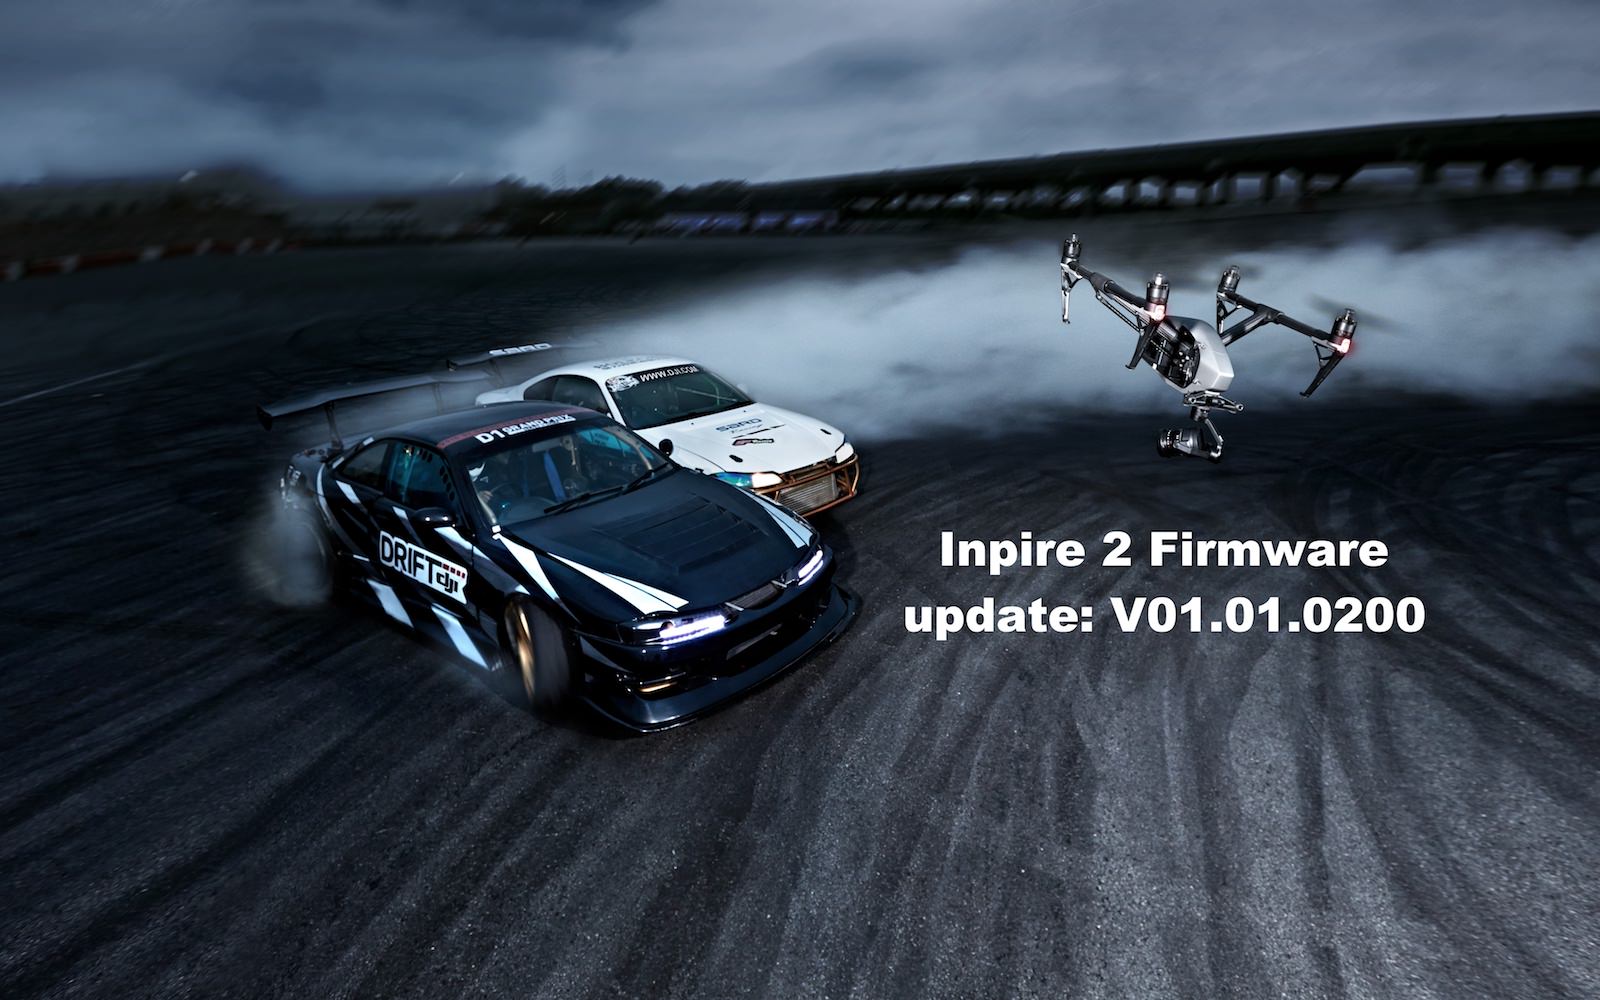 New Inspire 2 Firmware Released - V01.01.0200